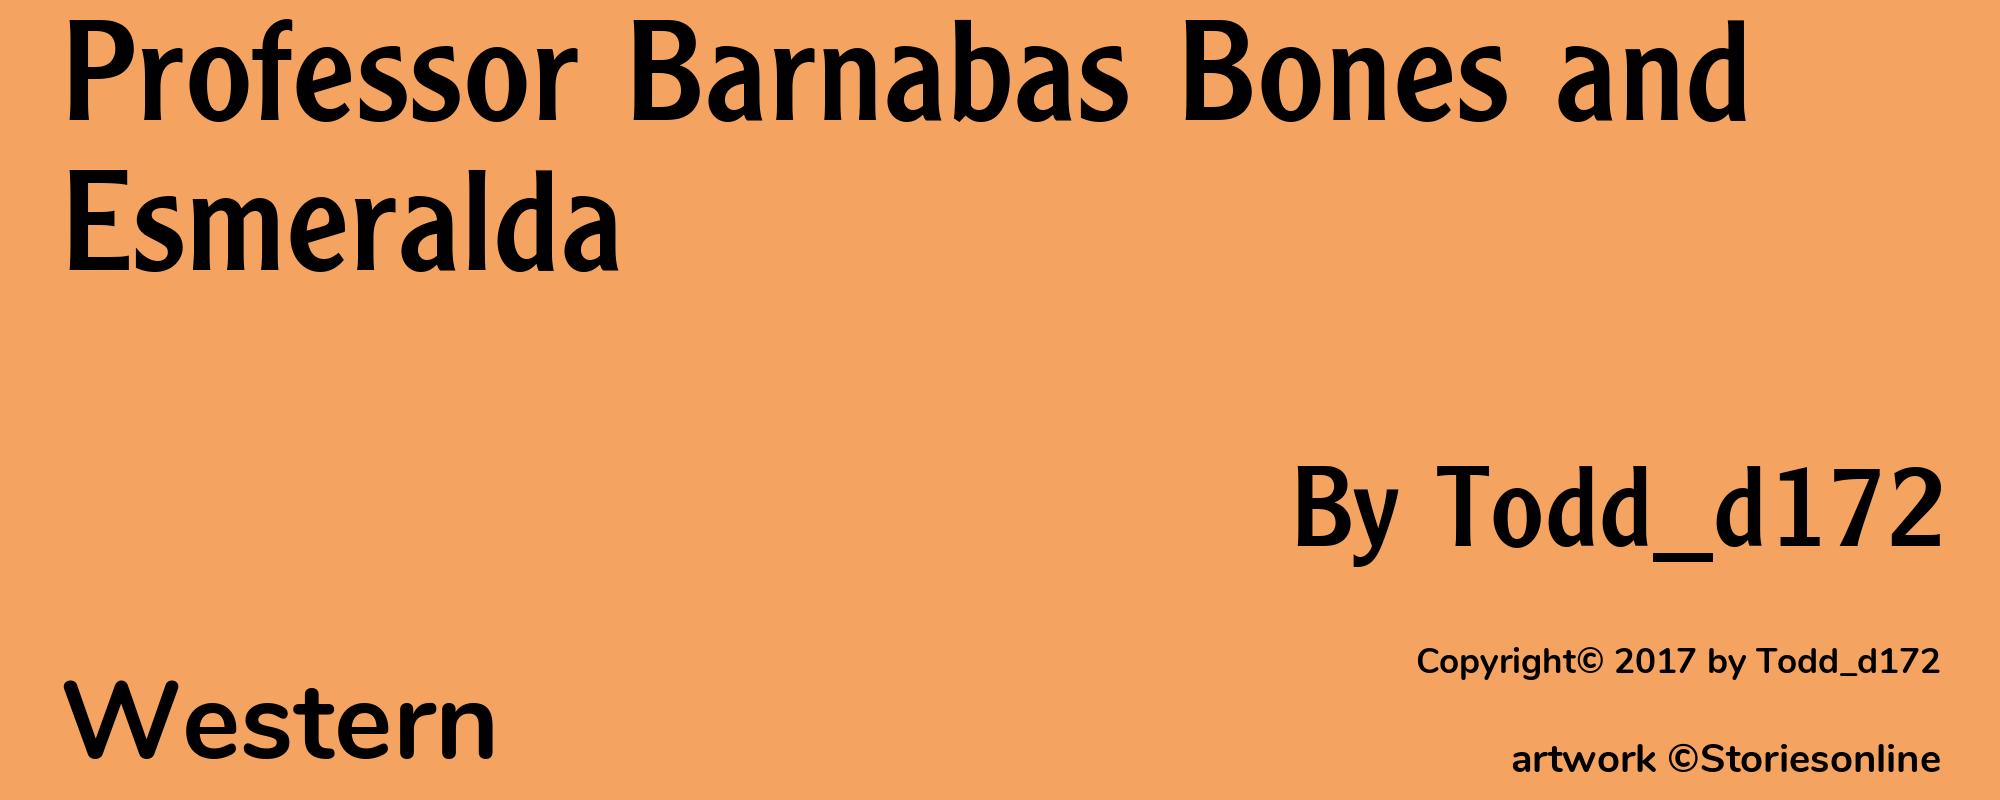 Professor Barnabas Bones and Esmeralda - Cover